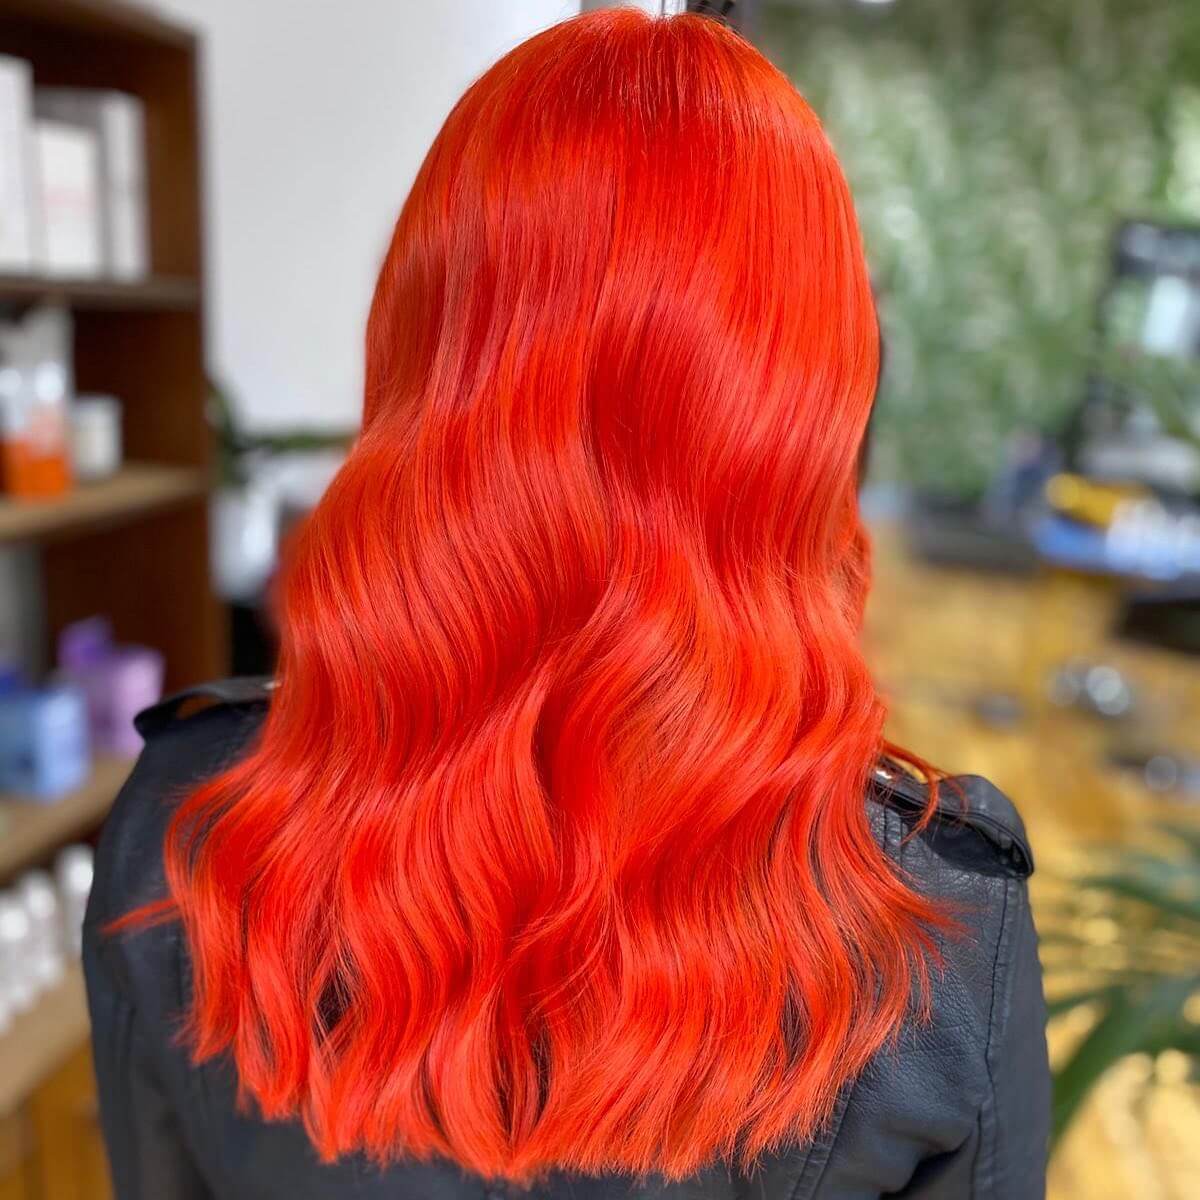 Fiery Orange hair